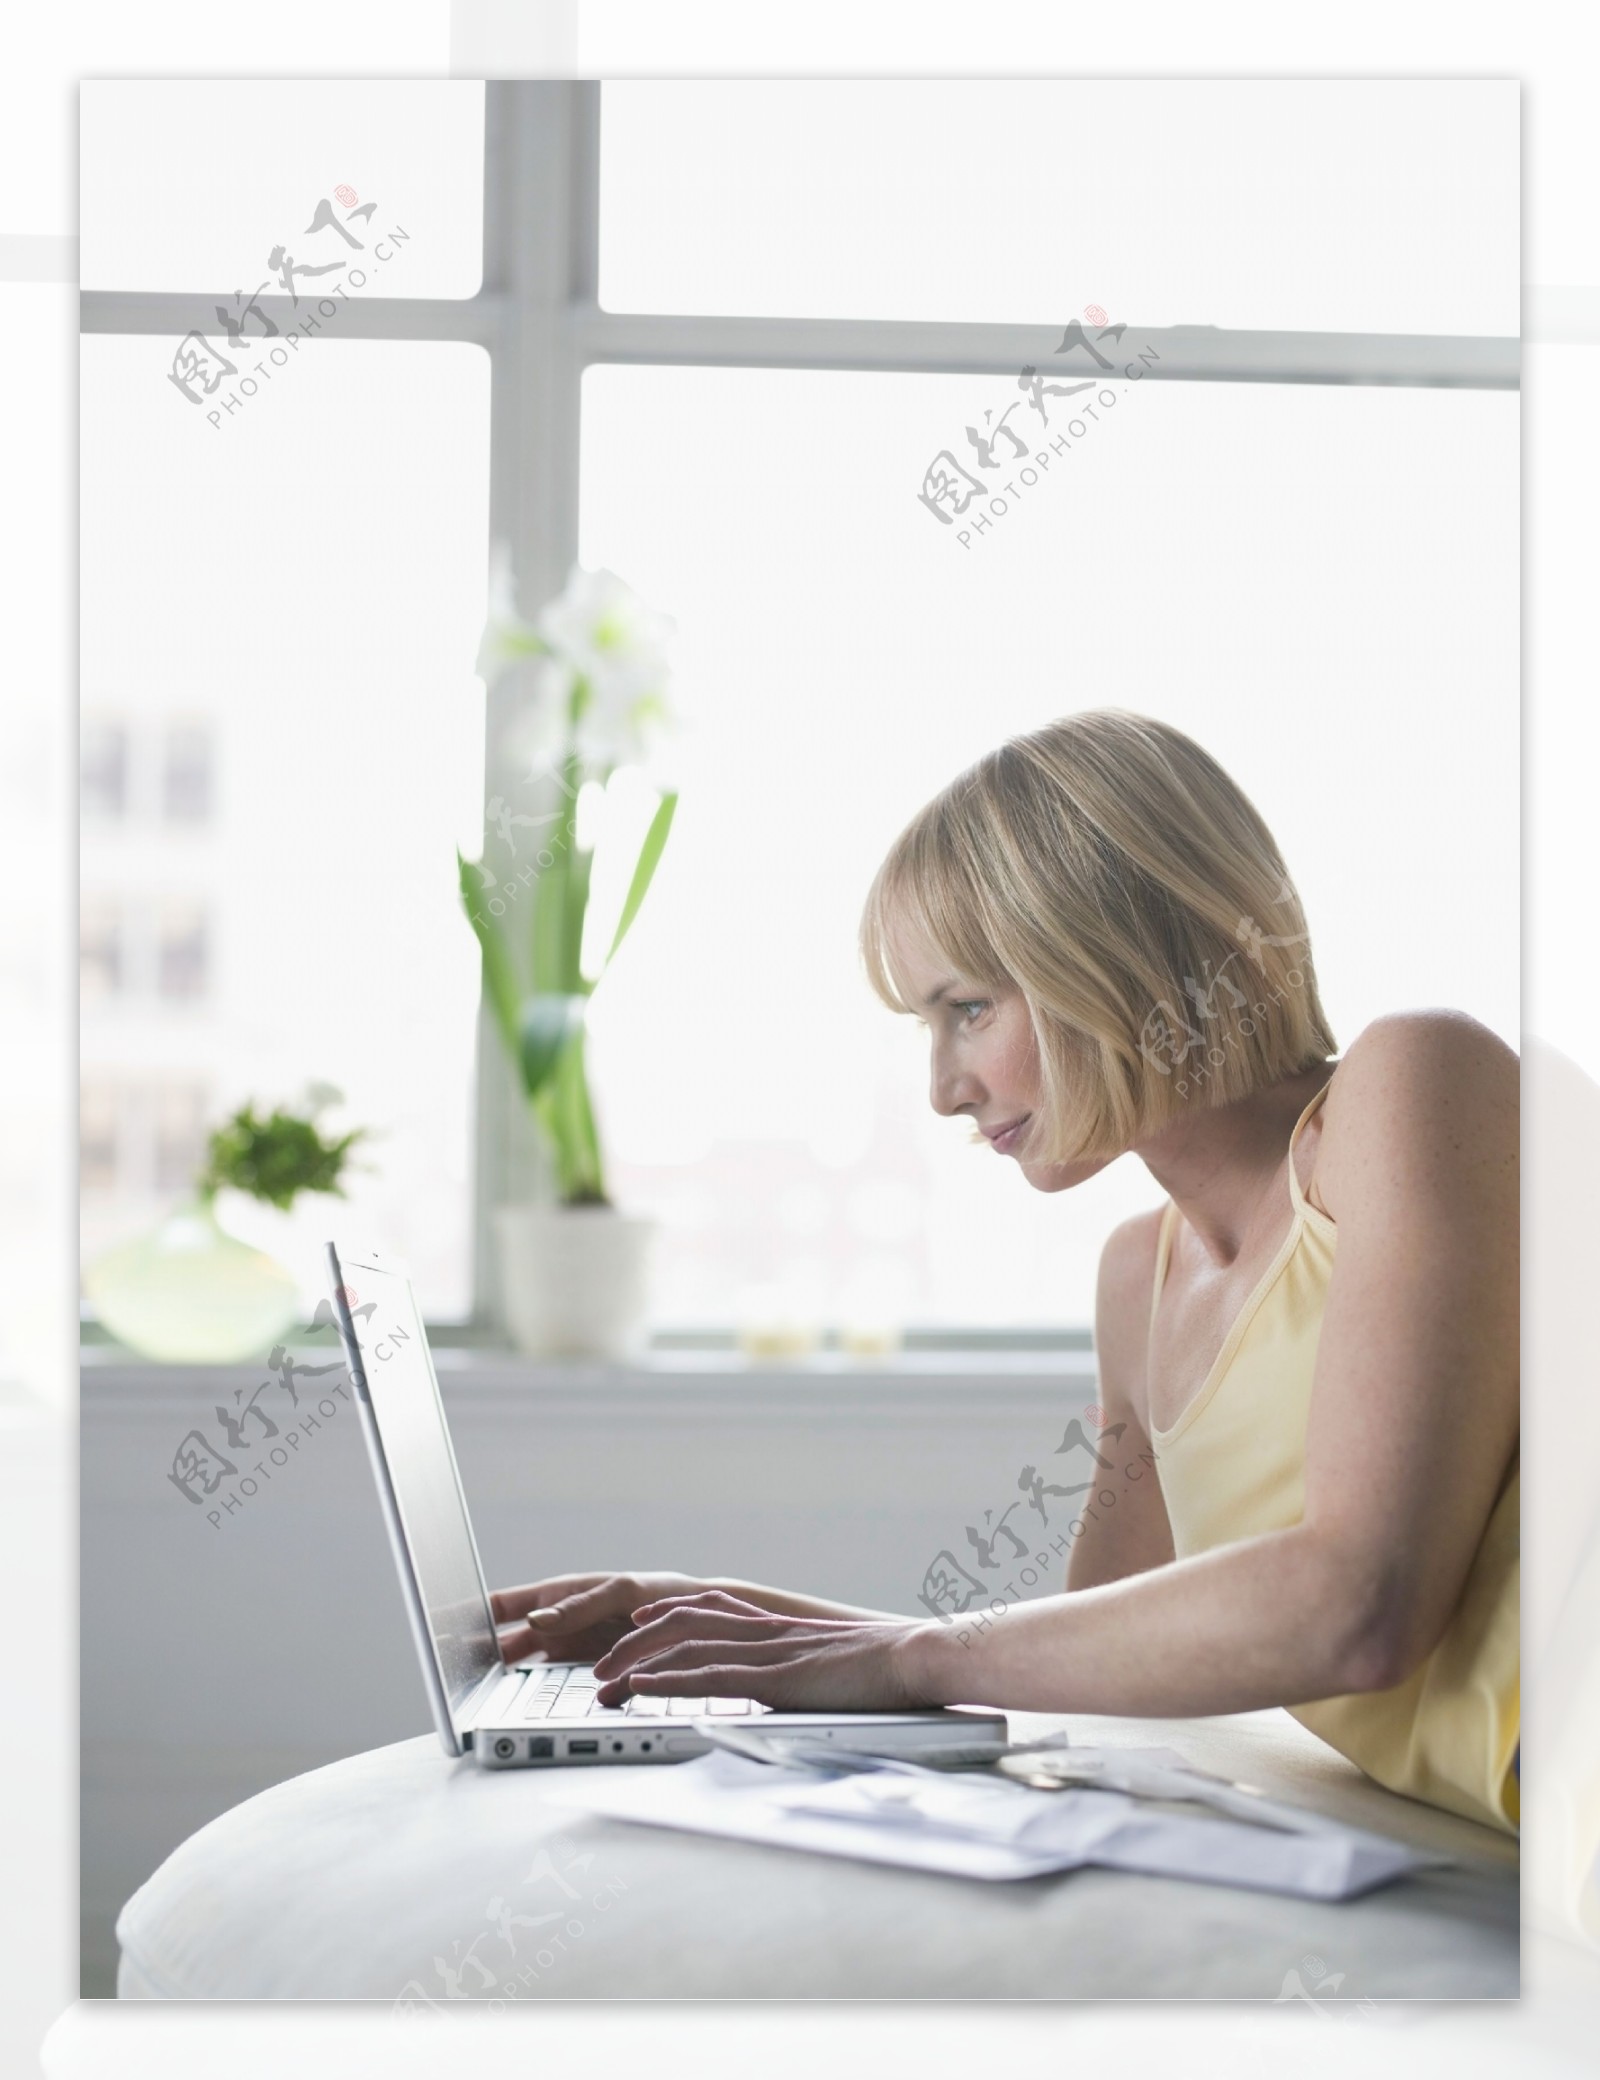 趴着操作电脑的女人图片